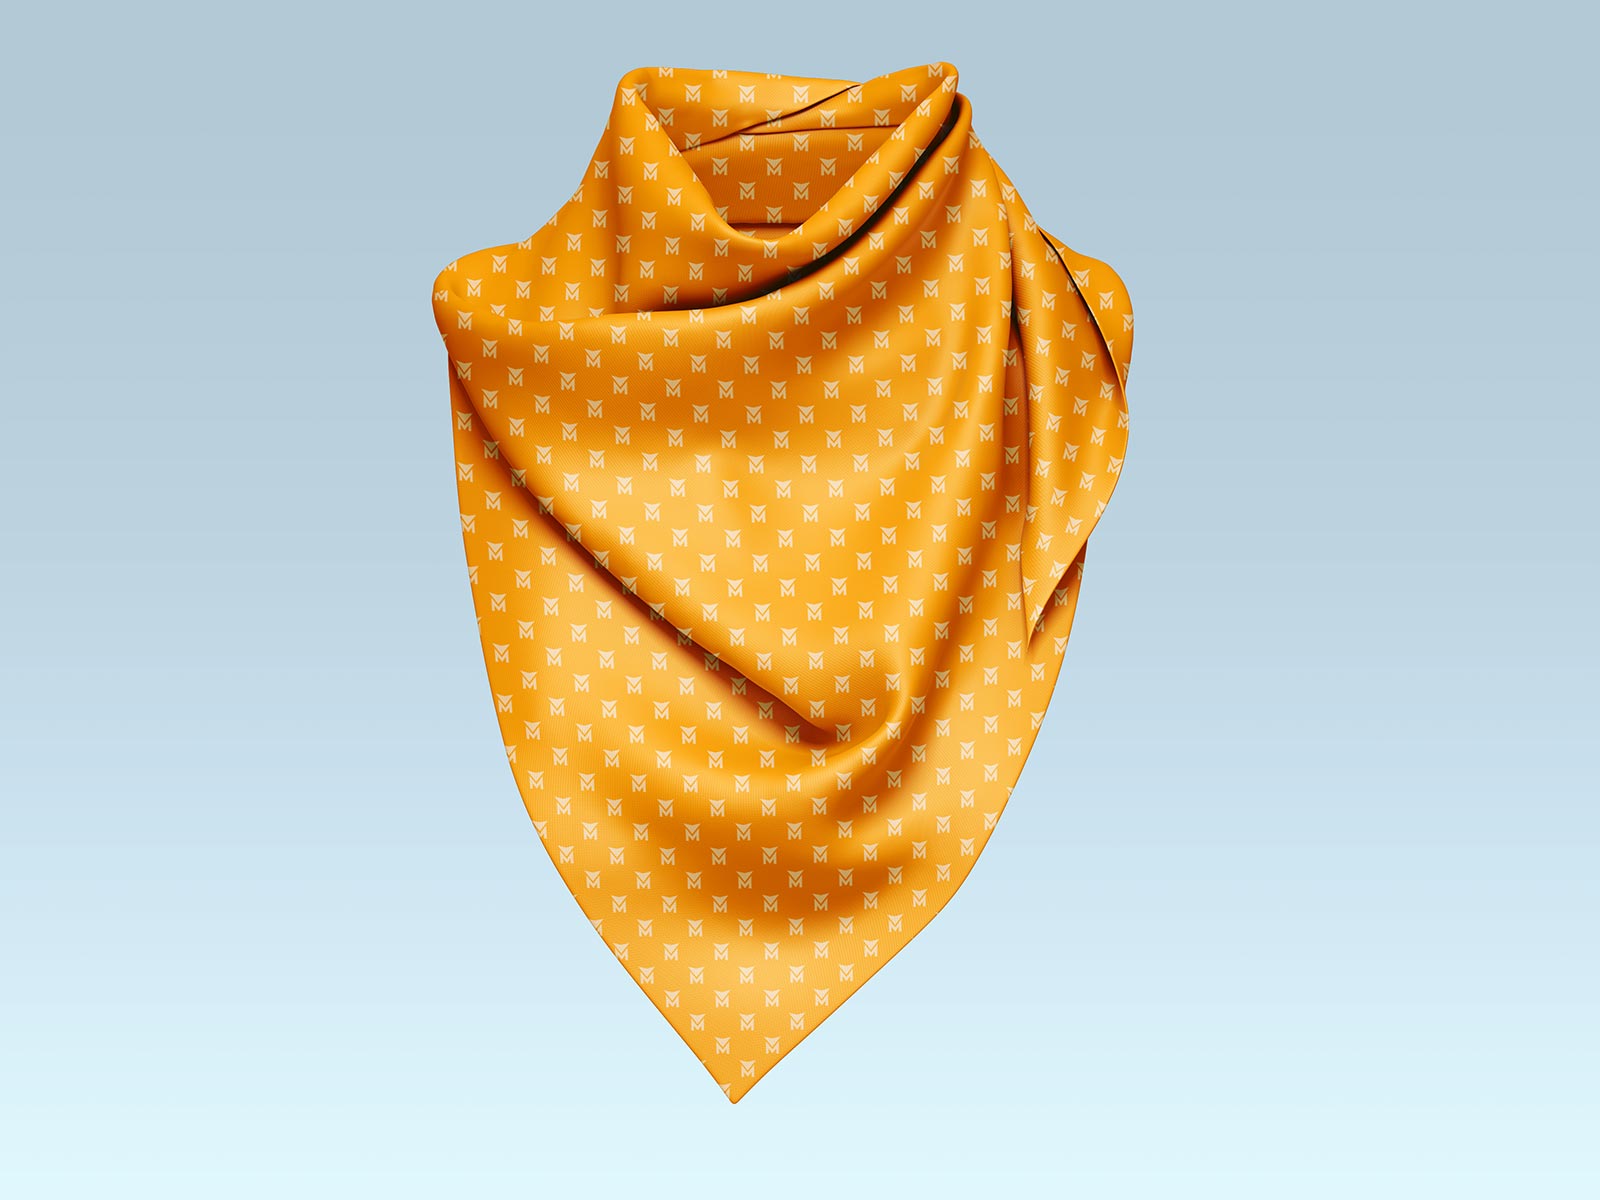 Set de maqueta de pañuelo en cuello / bufanda